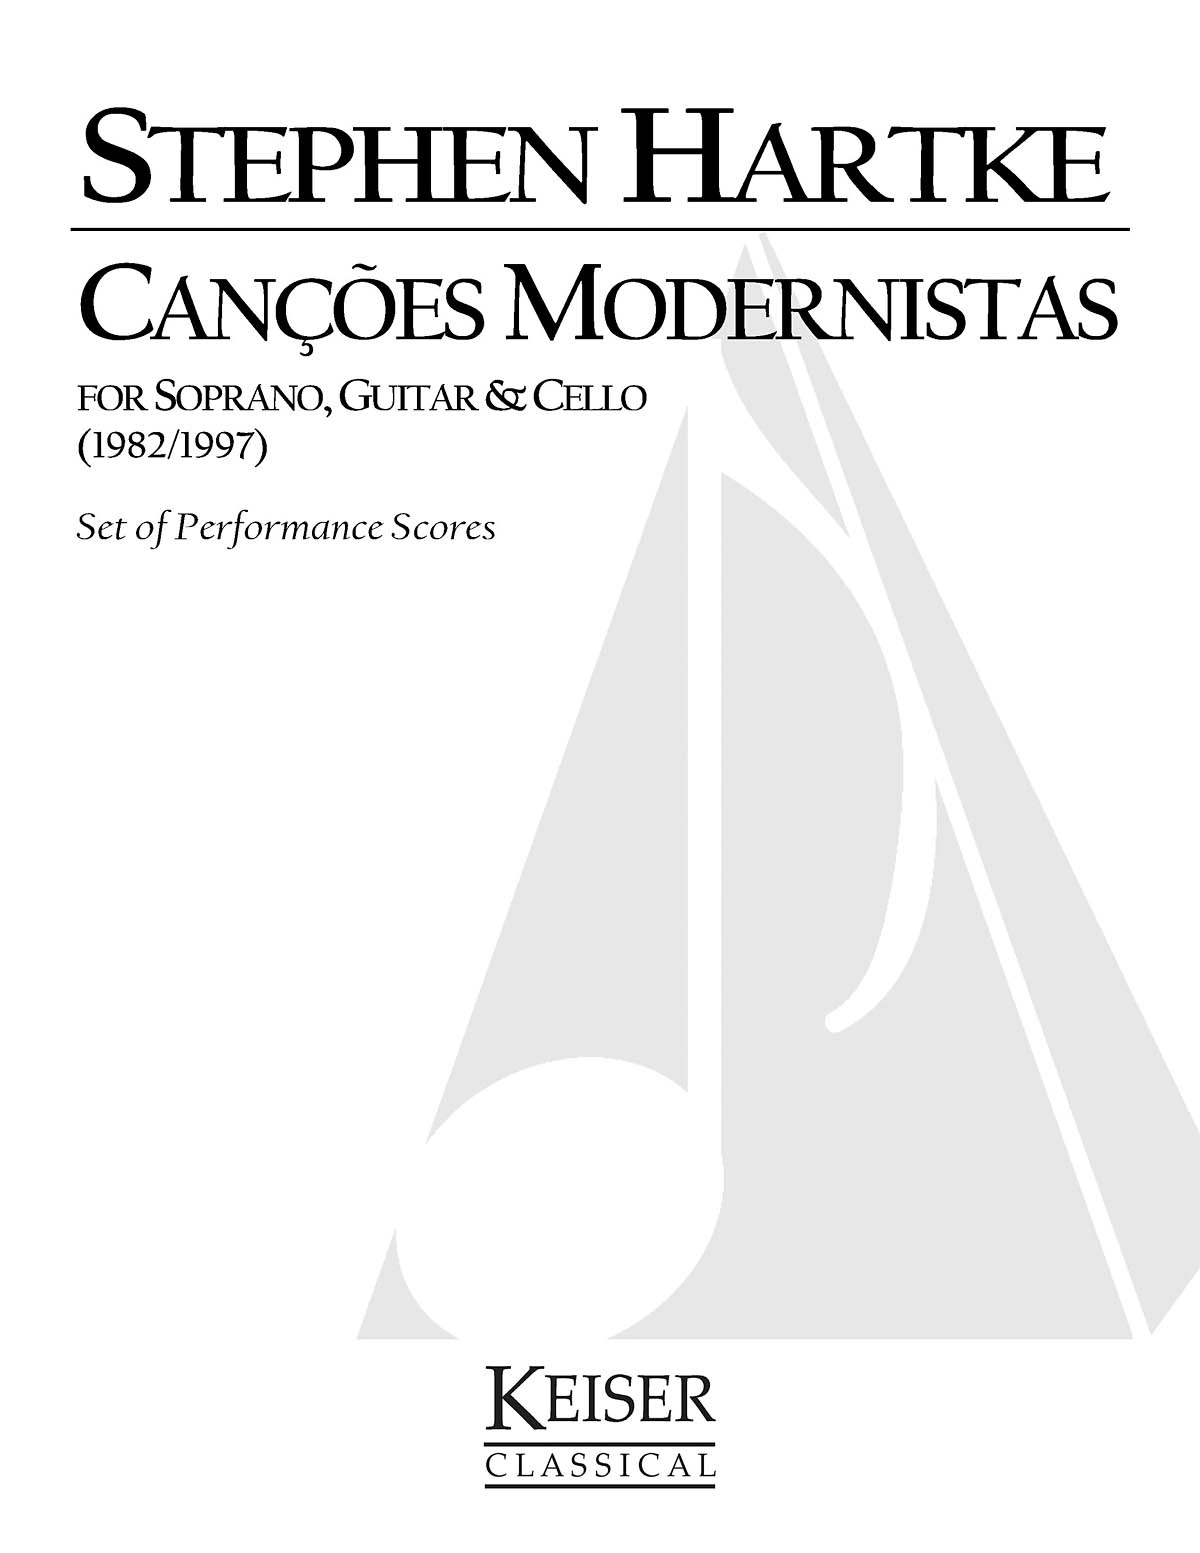 Cancös Modernistas (Soprano with Guitar and Cello)